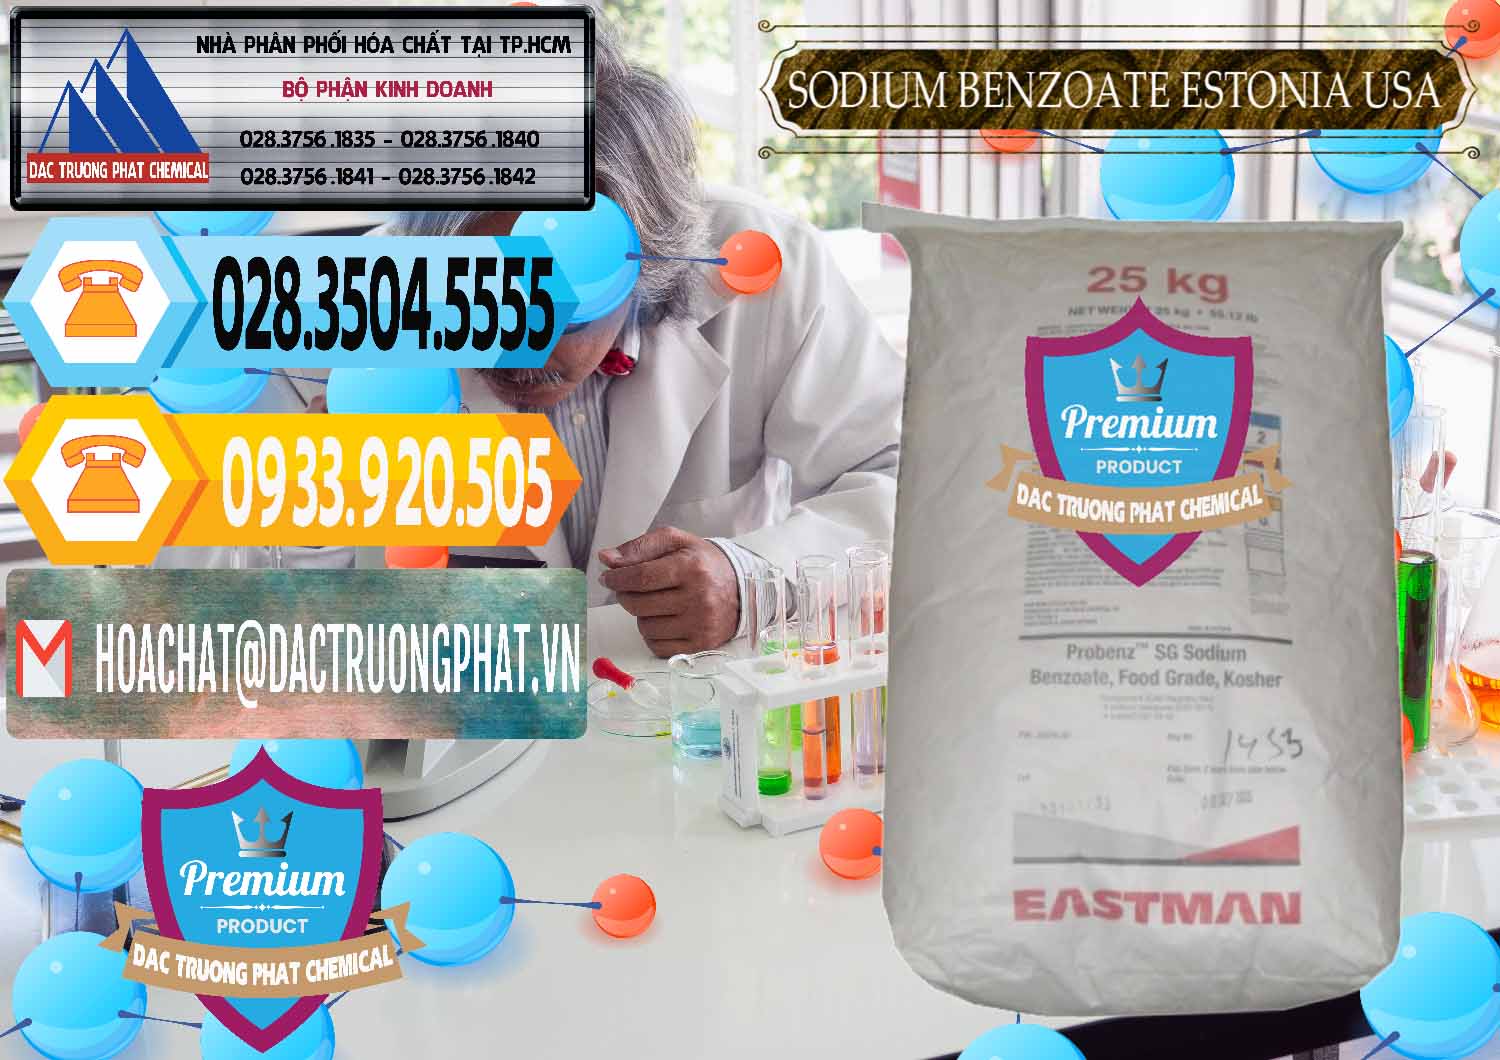 Công ty chuyên kinh doanh _ bán Sodium Benzoate - Mốc Bột Estonia Mỹ USA - 0468 - Cty chuyên phân phối ( nhập khẩu ) hóa chất tại TP.HCM - hoachattayrua.net